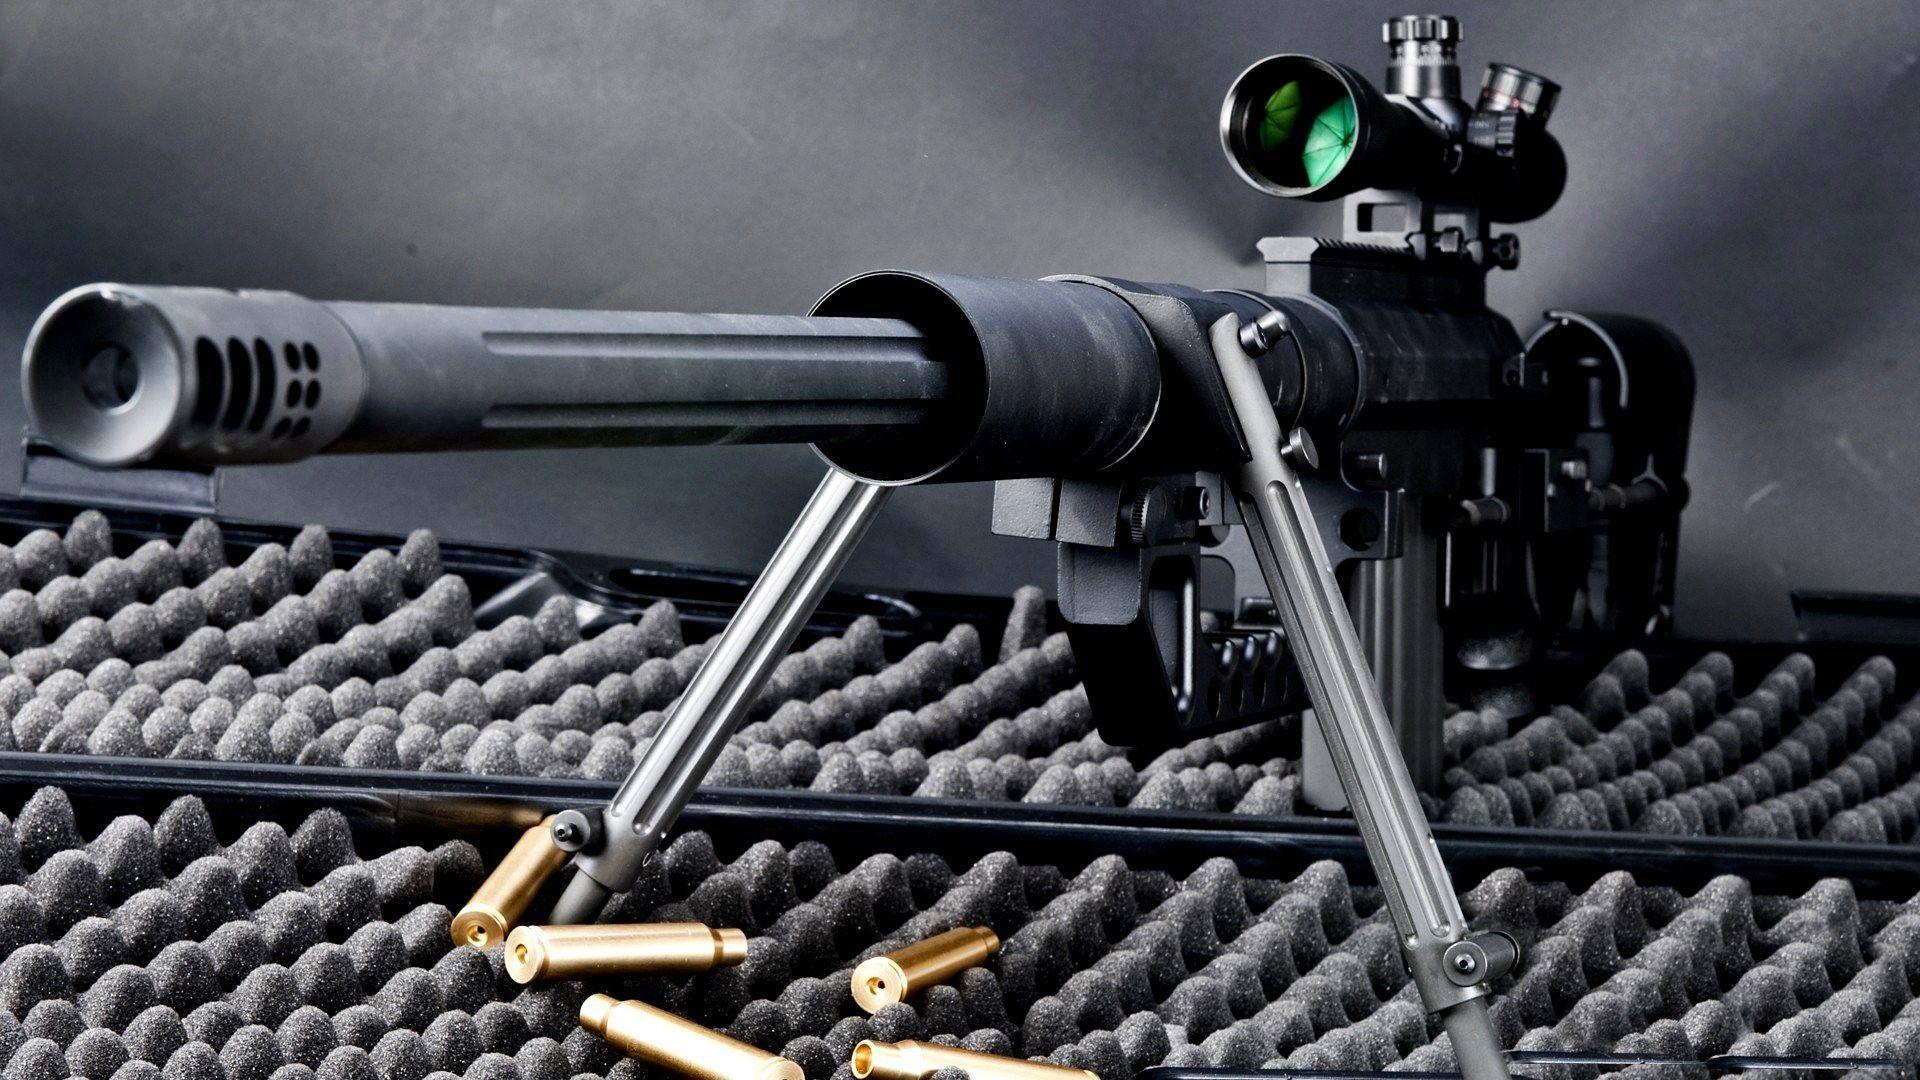 sniper rifle widescreen high definition desktop wallpaper background